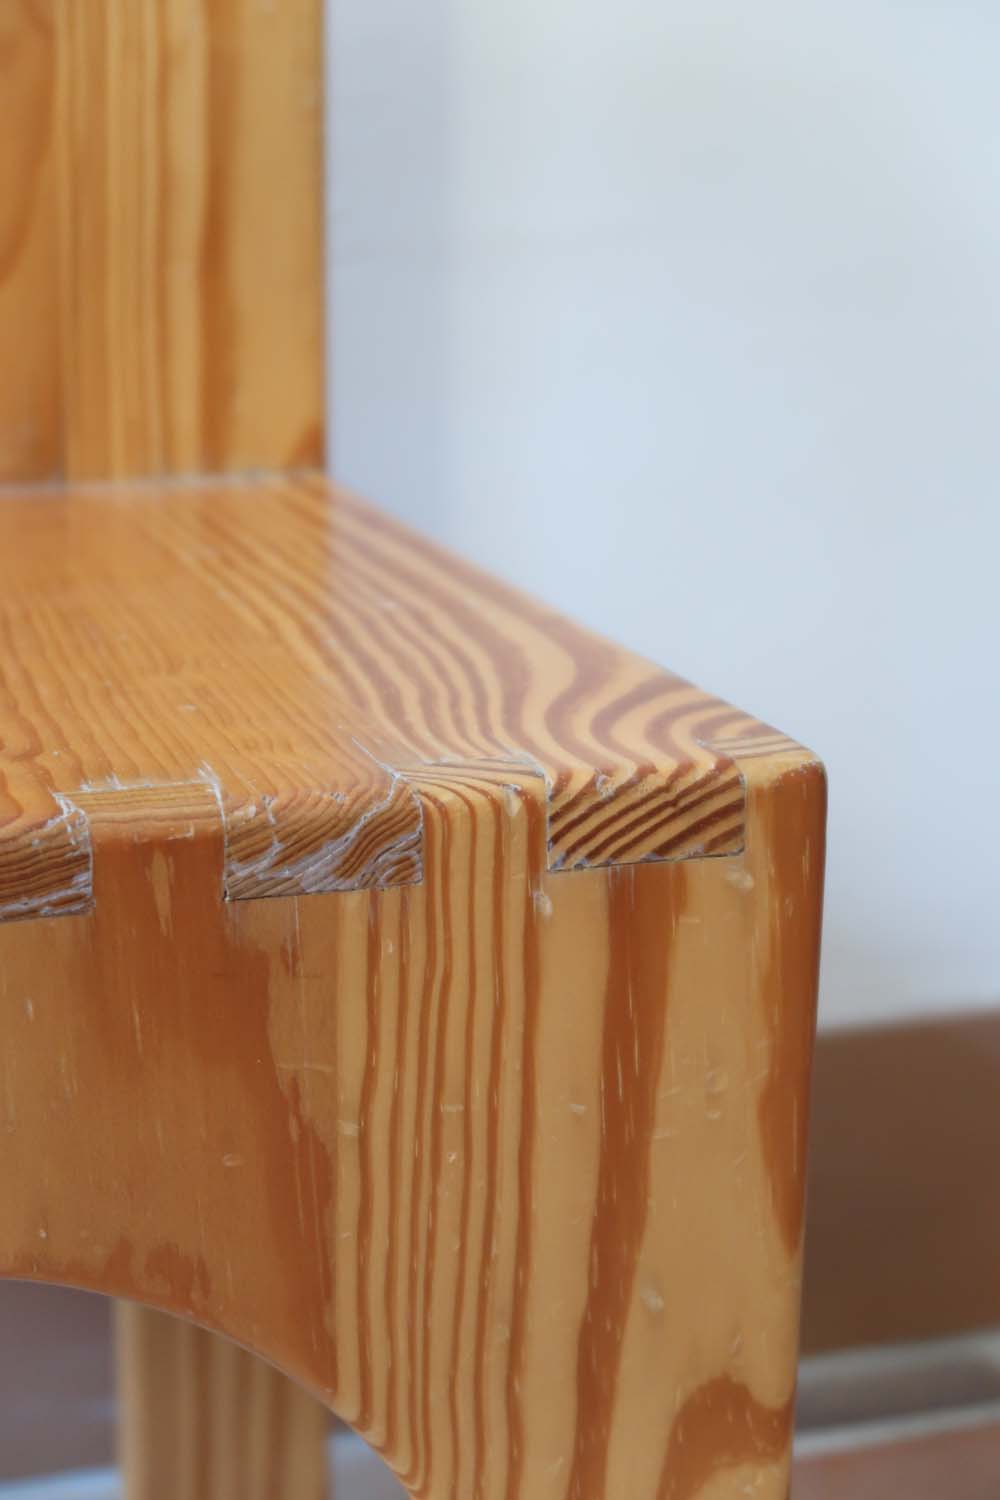 chaise enfant bois vintage pin rond design moderniste brutaliste